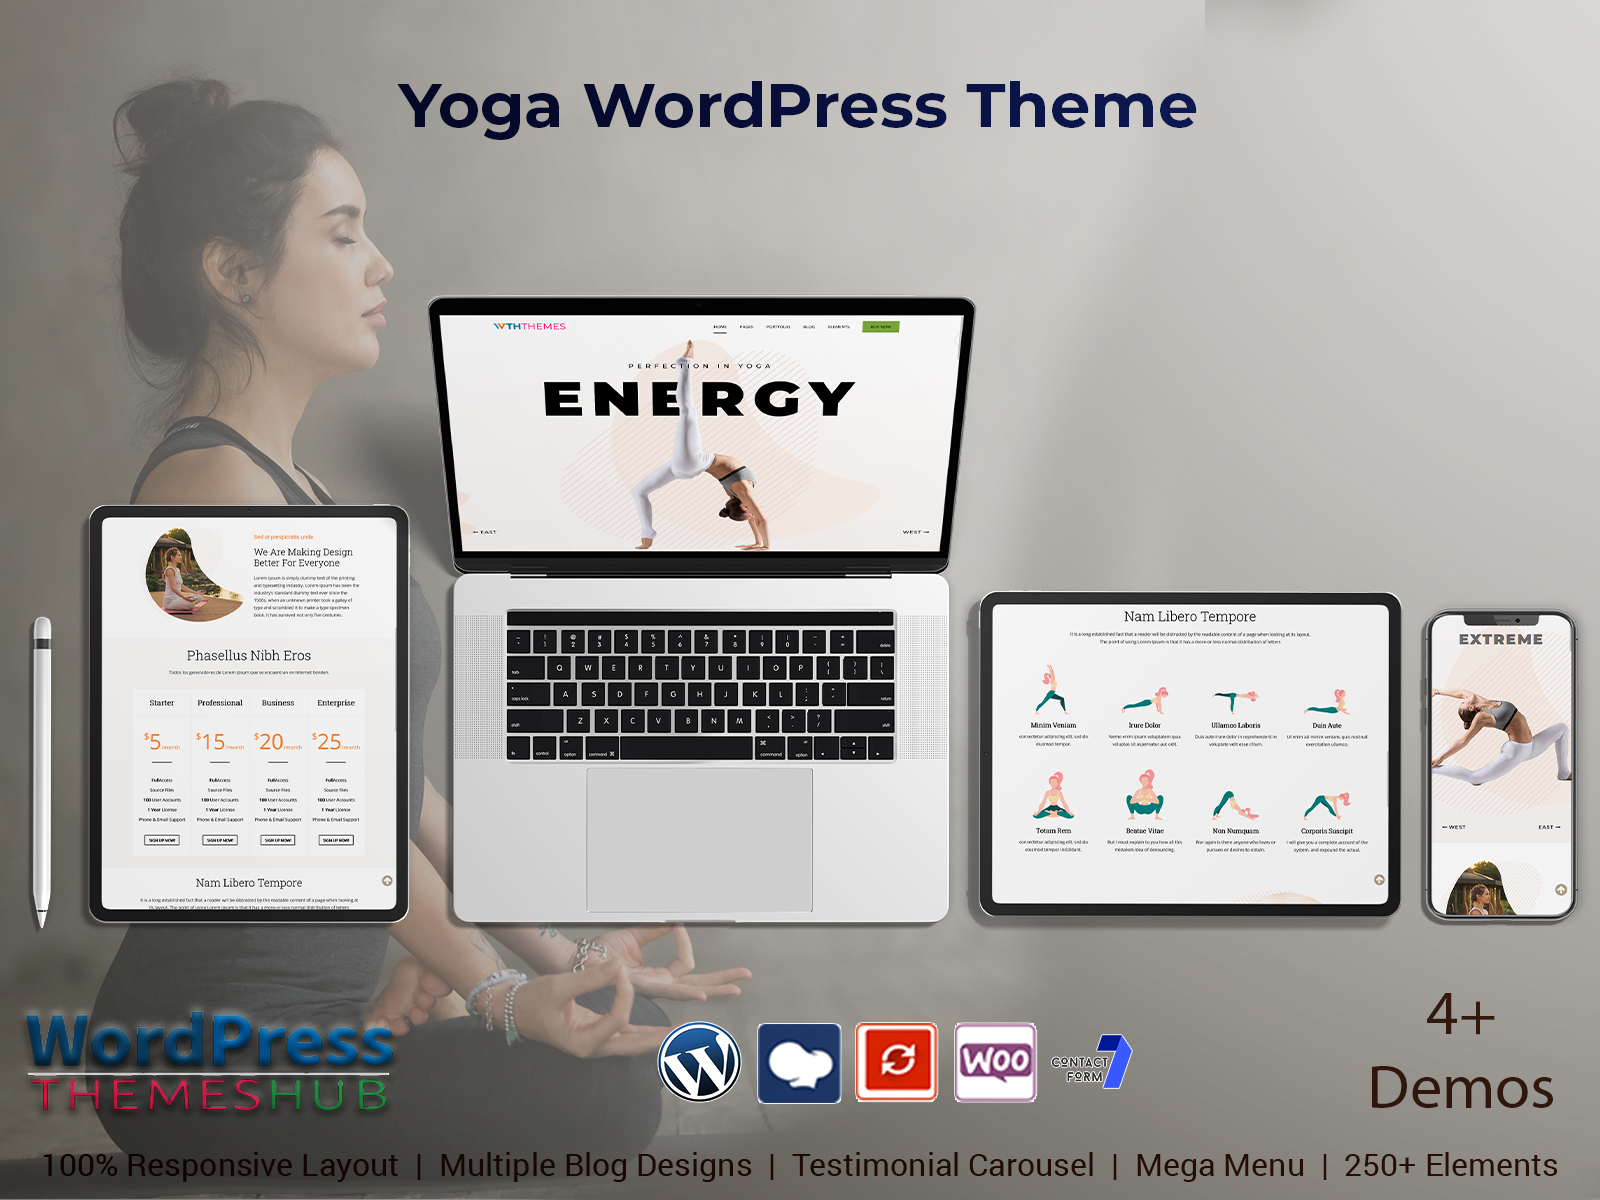 Yoga WordPress Theme For A Studio, Gym, Or Yoga Blog